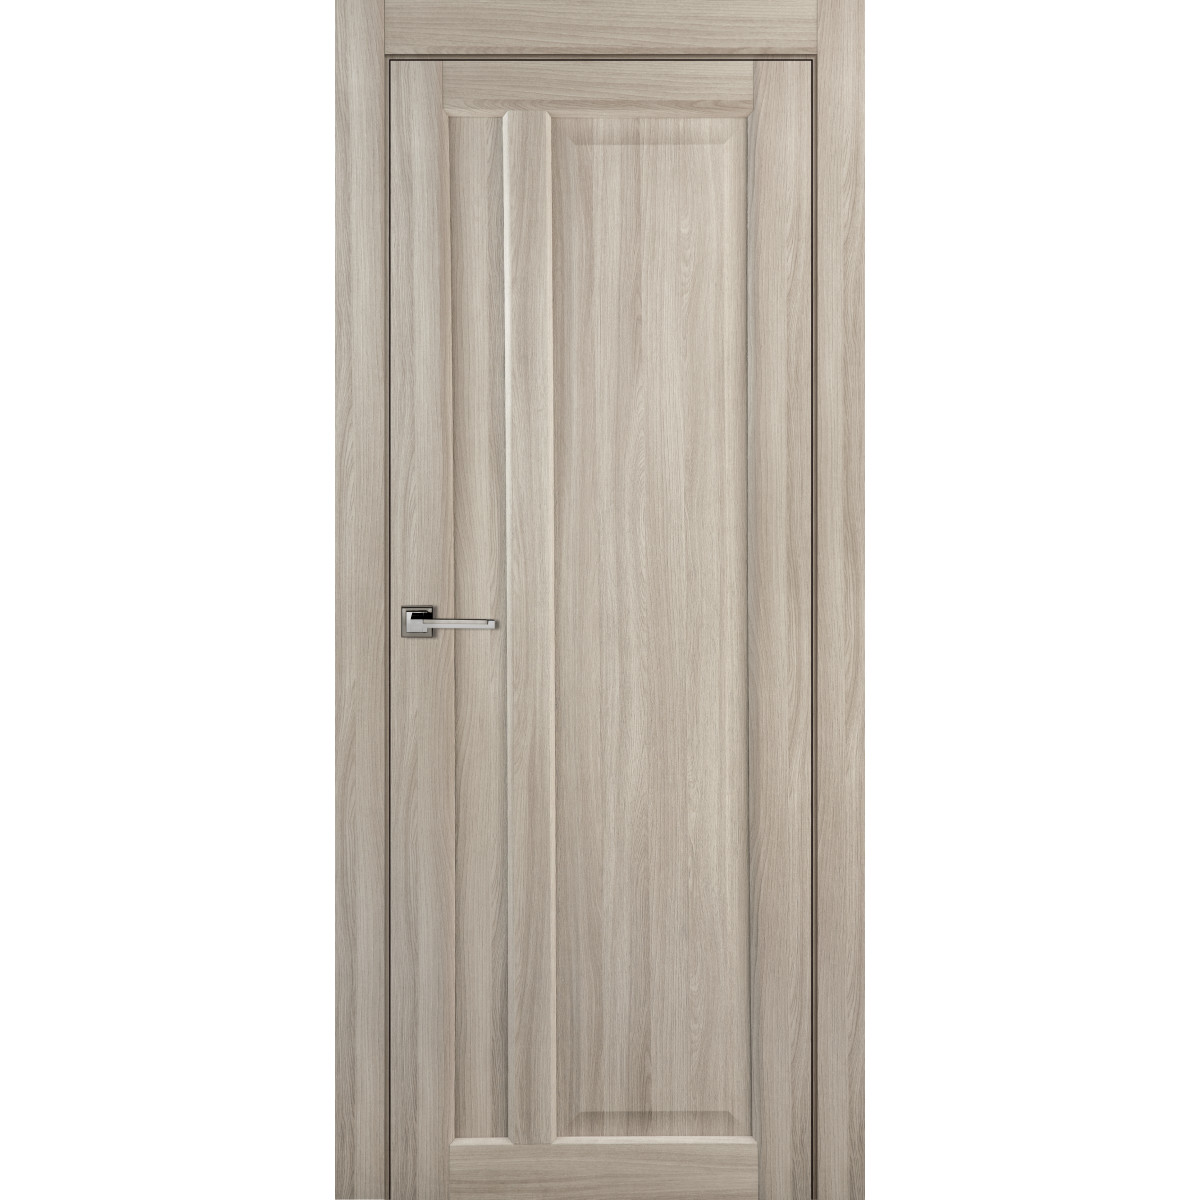 Дверь межкомнатная глухая Artens Мария 60x200 см, ПВХ, цвет шимо, с замком в комплекте